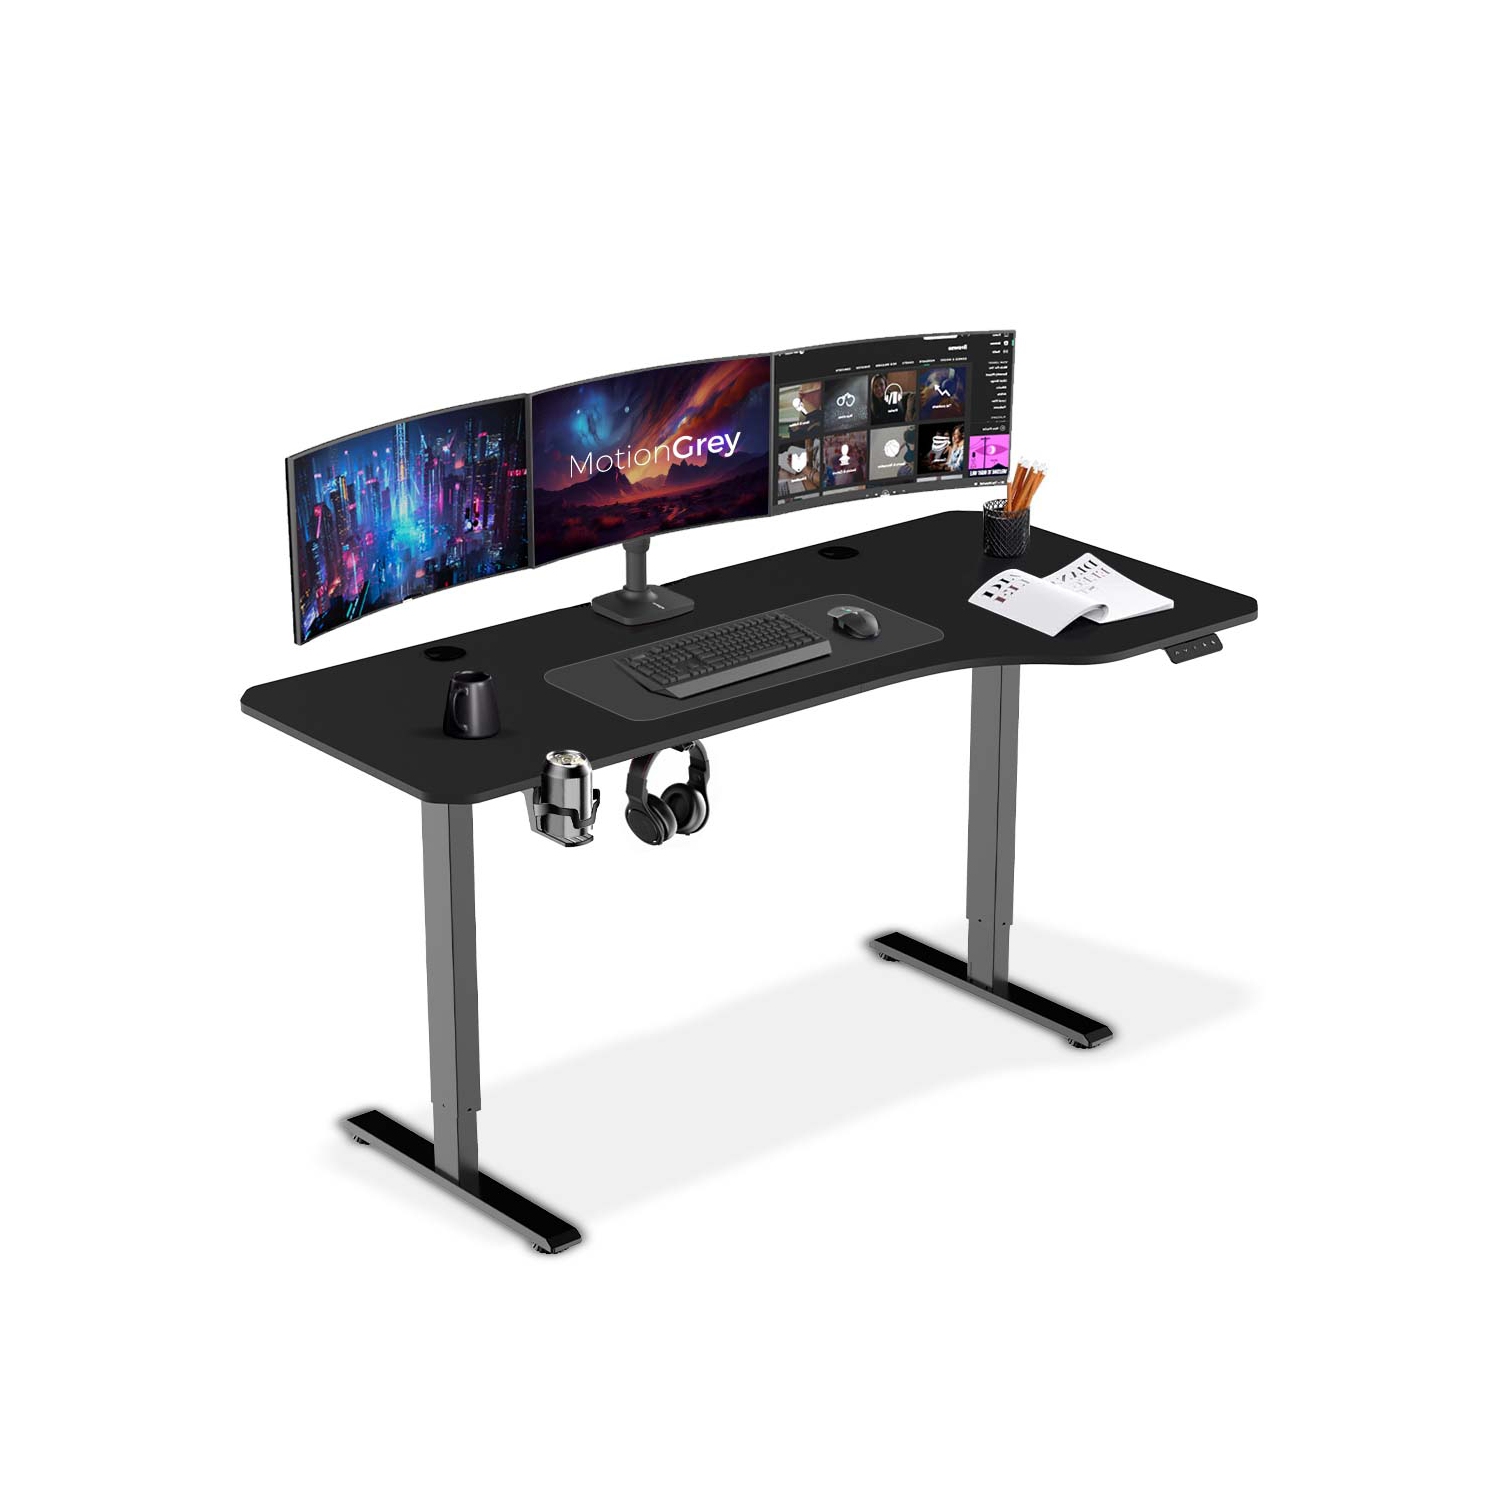 MotionGrey - Height Adjustable L Shaped Standing Desk, 160x60cm, Corner Desk, L Shape Desk, Computer Electric Sit Stand Desk Stand - Motorized Frame Right Top (Black, 63x24)